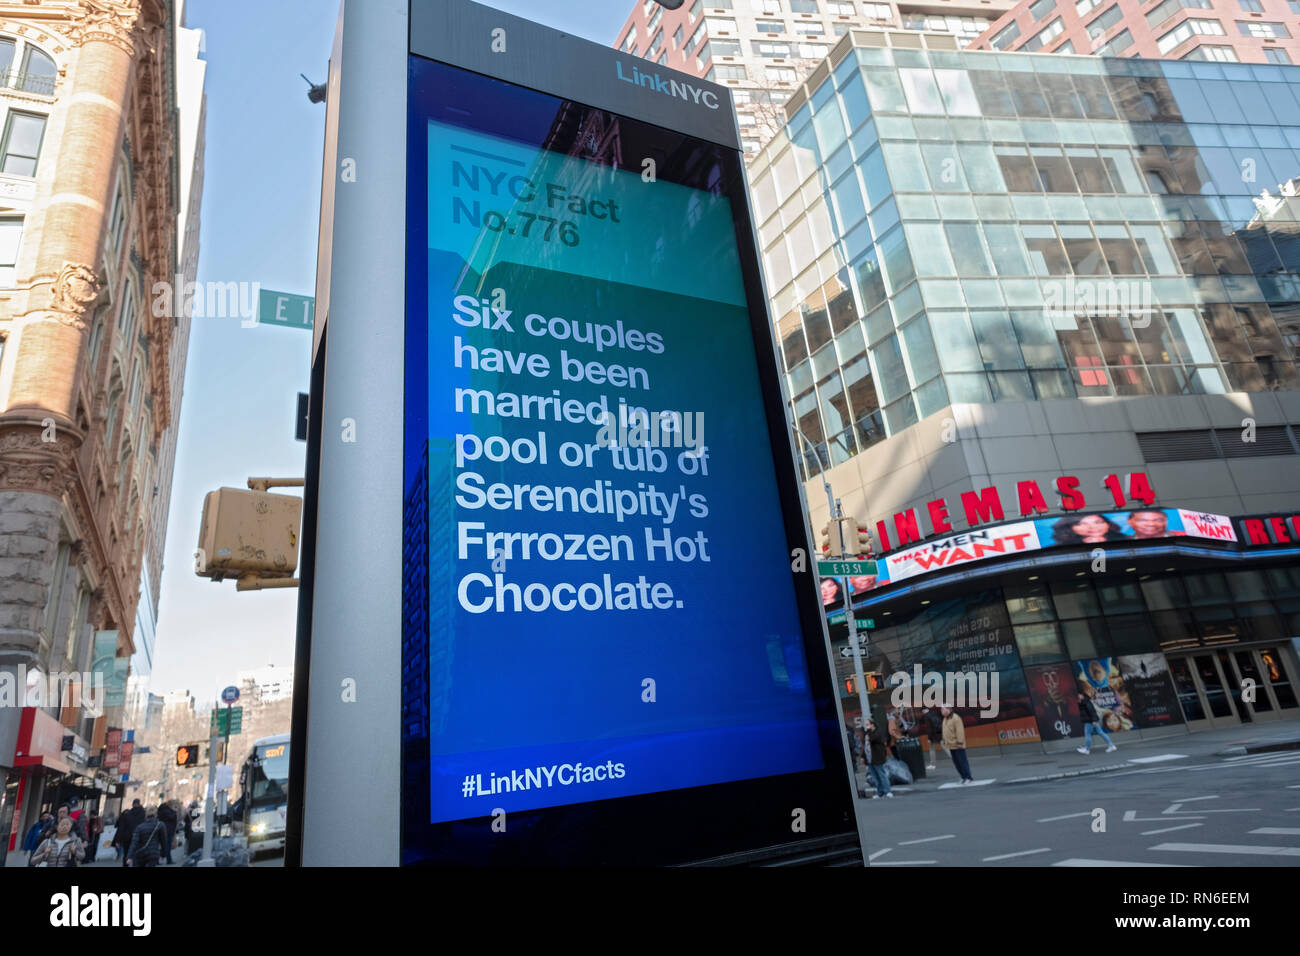 Eine Nachricht auf einen Link NYC-Bildschirm mit den Spaß Tatsache über Paare heiraten in einem Pool oder Whirlpool von Serendipity gefroren Heiße Schokolade. In Manhattan, NYC. digi Stockfoto